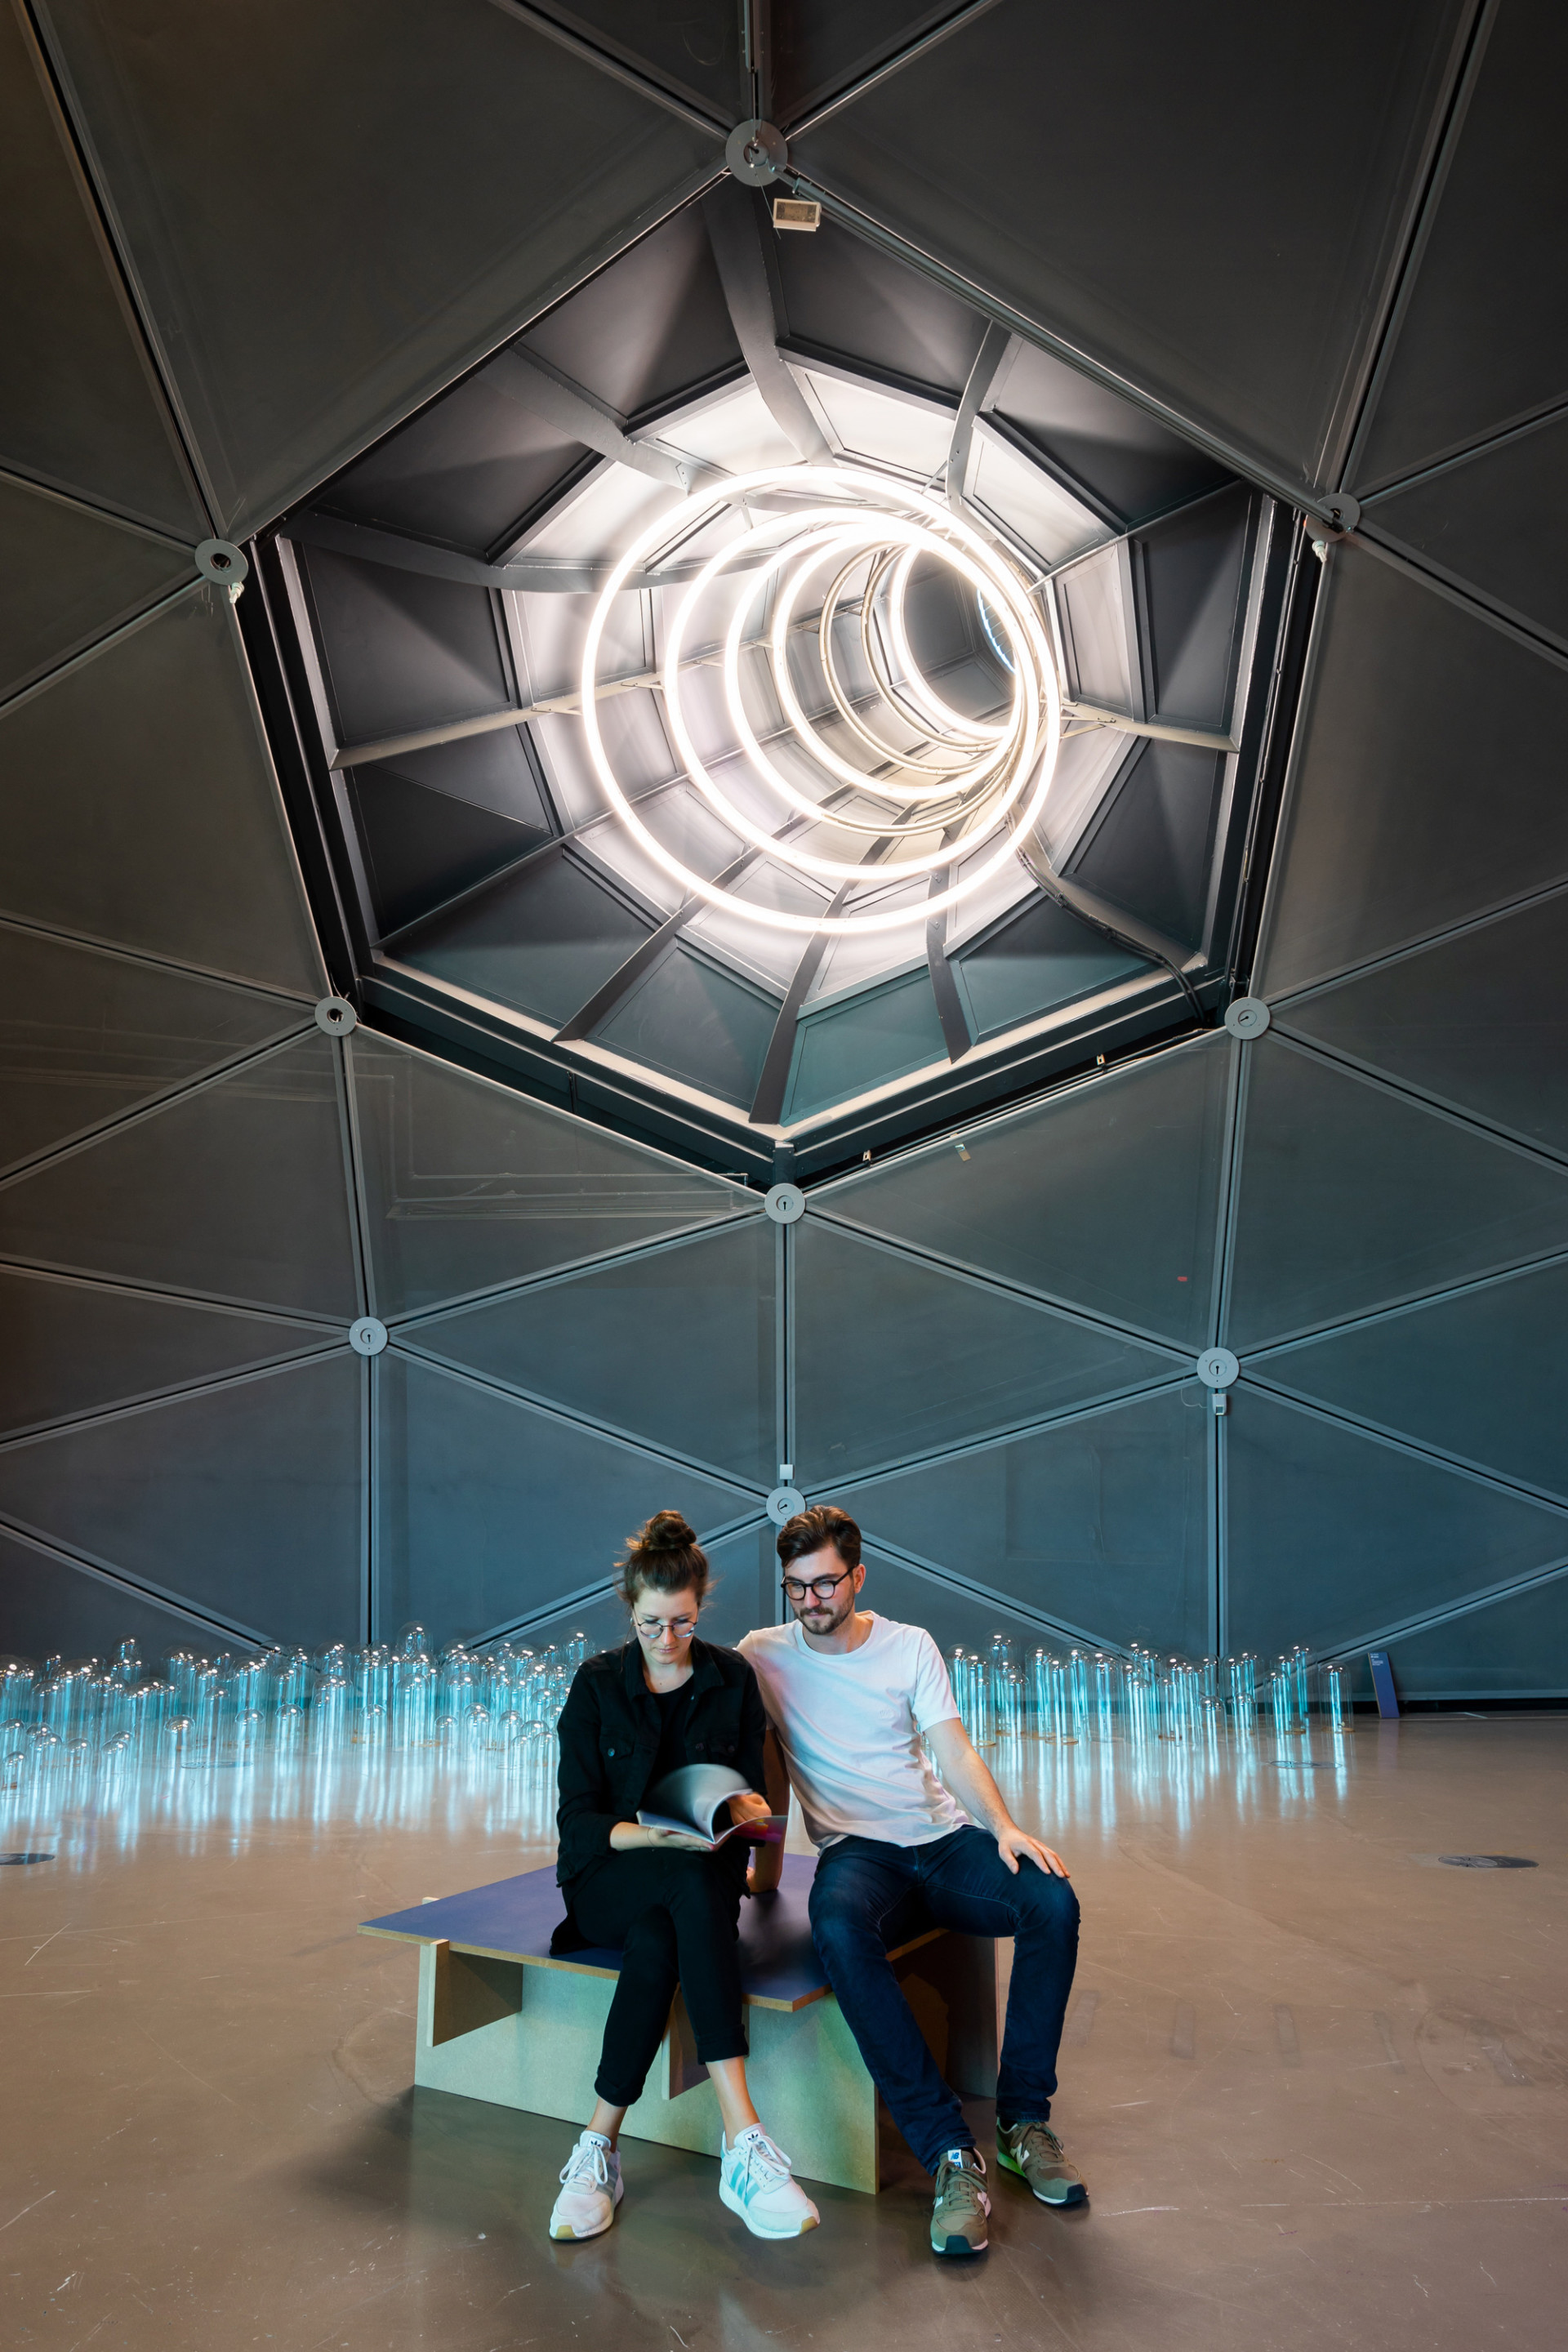 Lichtinstallation an der Decke des Kunsthauses, unter der zwei Menschen in der Mitte eines Ausstellungsraums sitzen und einen Katalog durchblättern